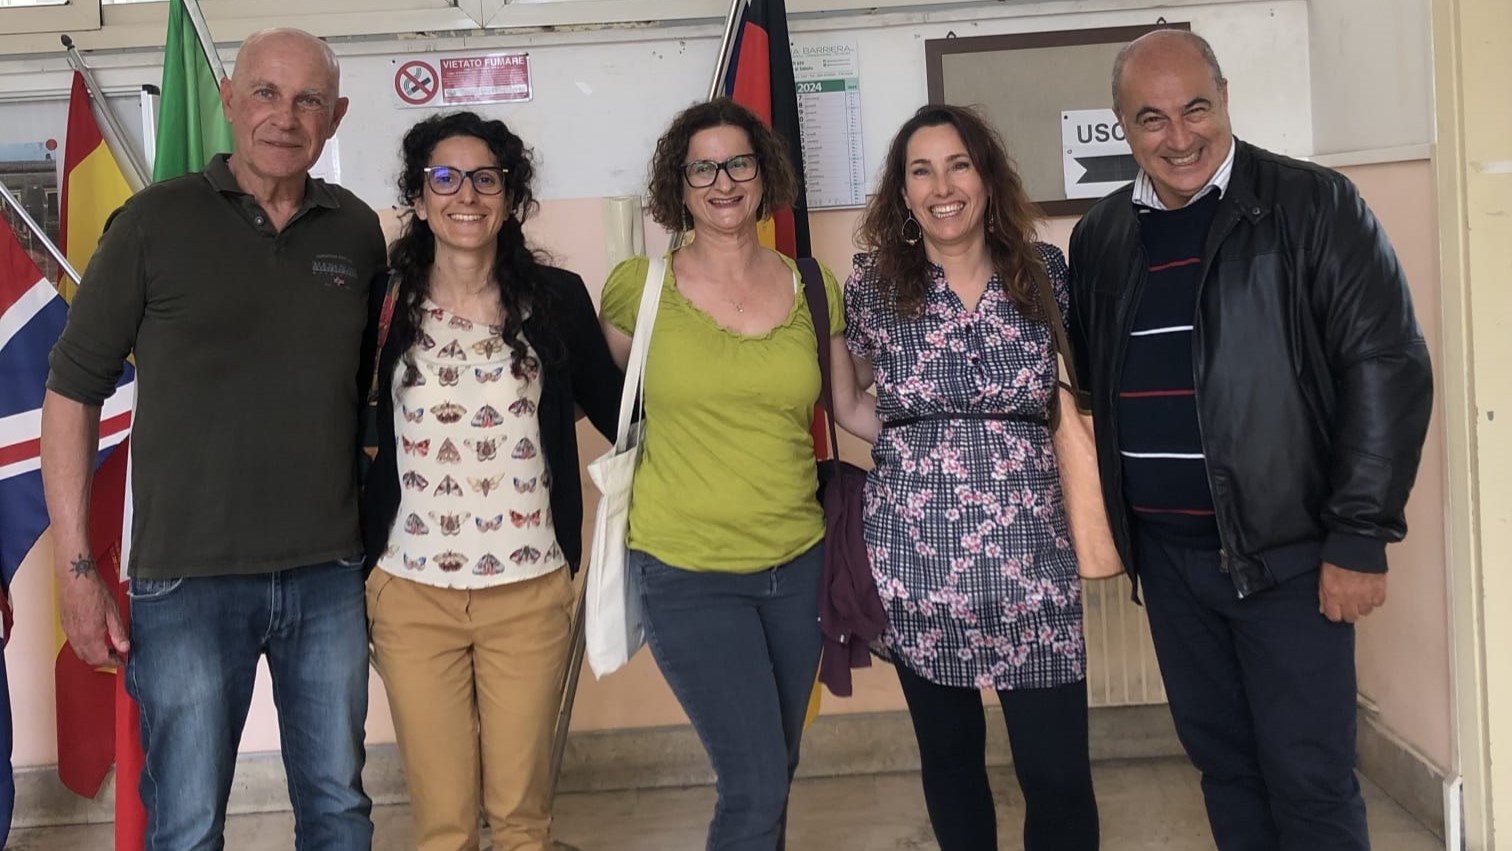 Insegnare oltre i confini: una docente francese in visita al liceo Boggio Lera di Catania